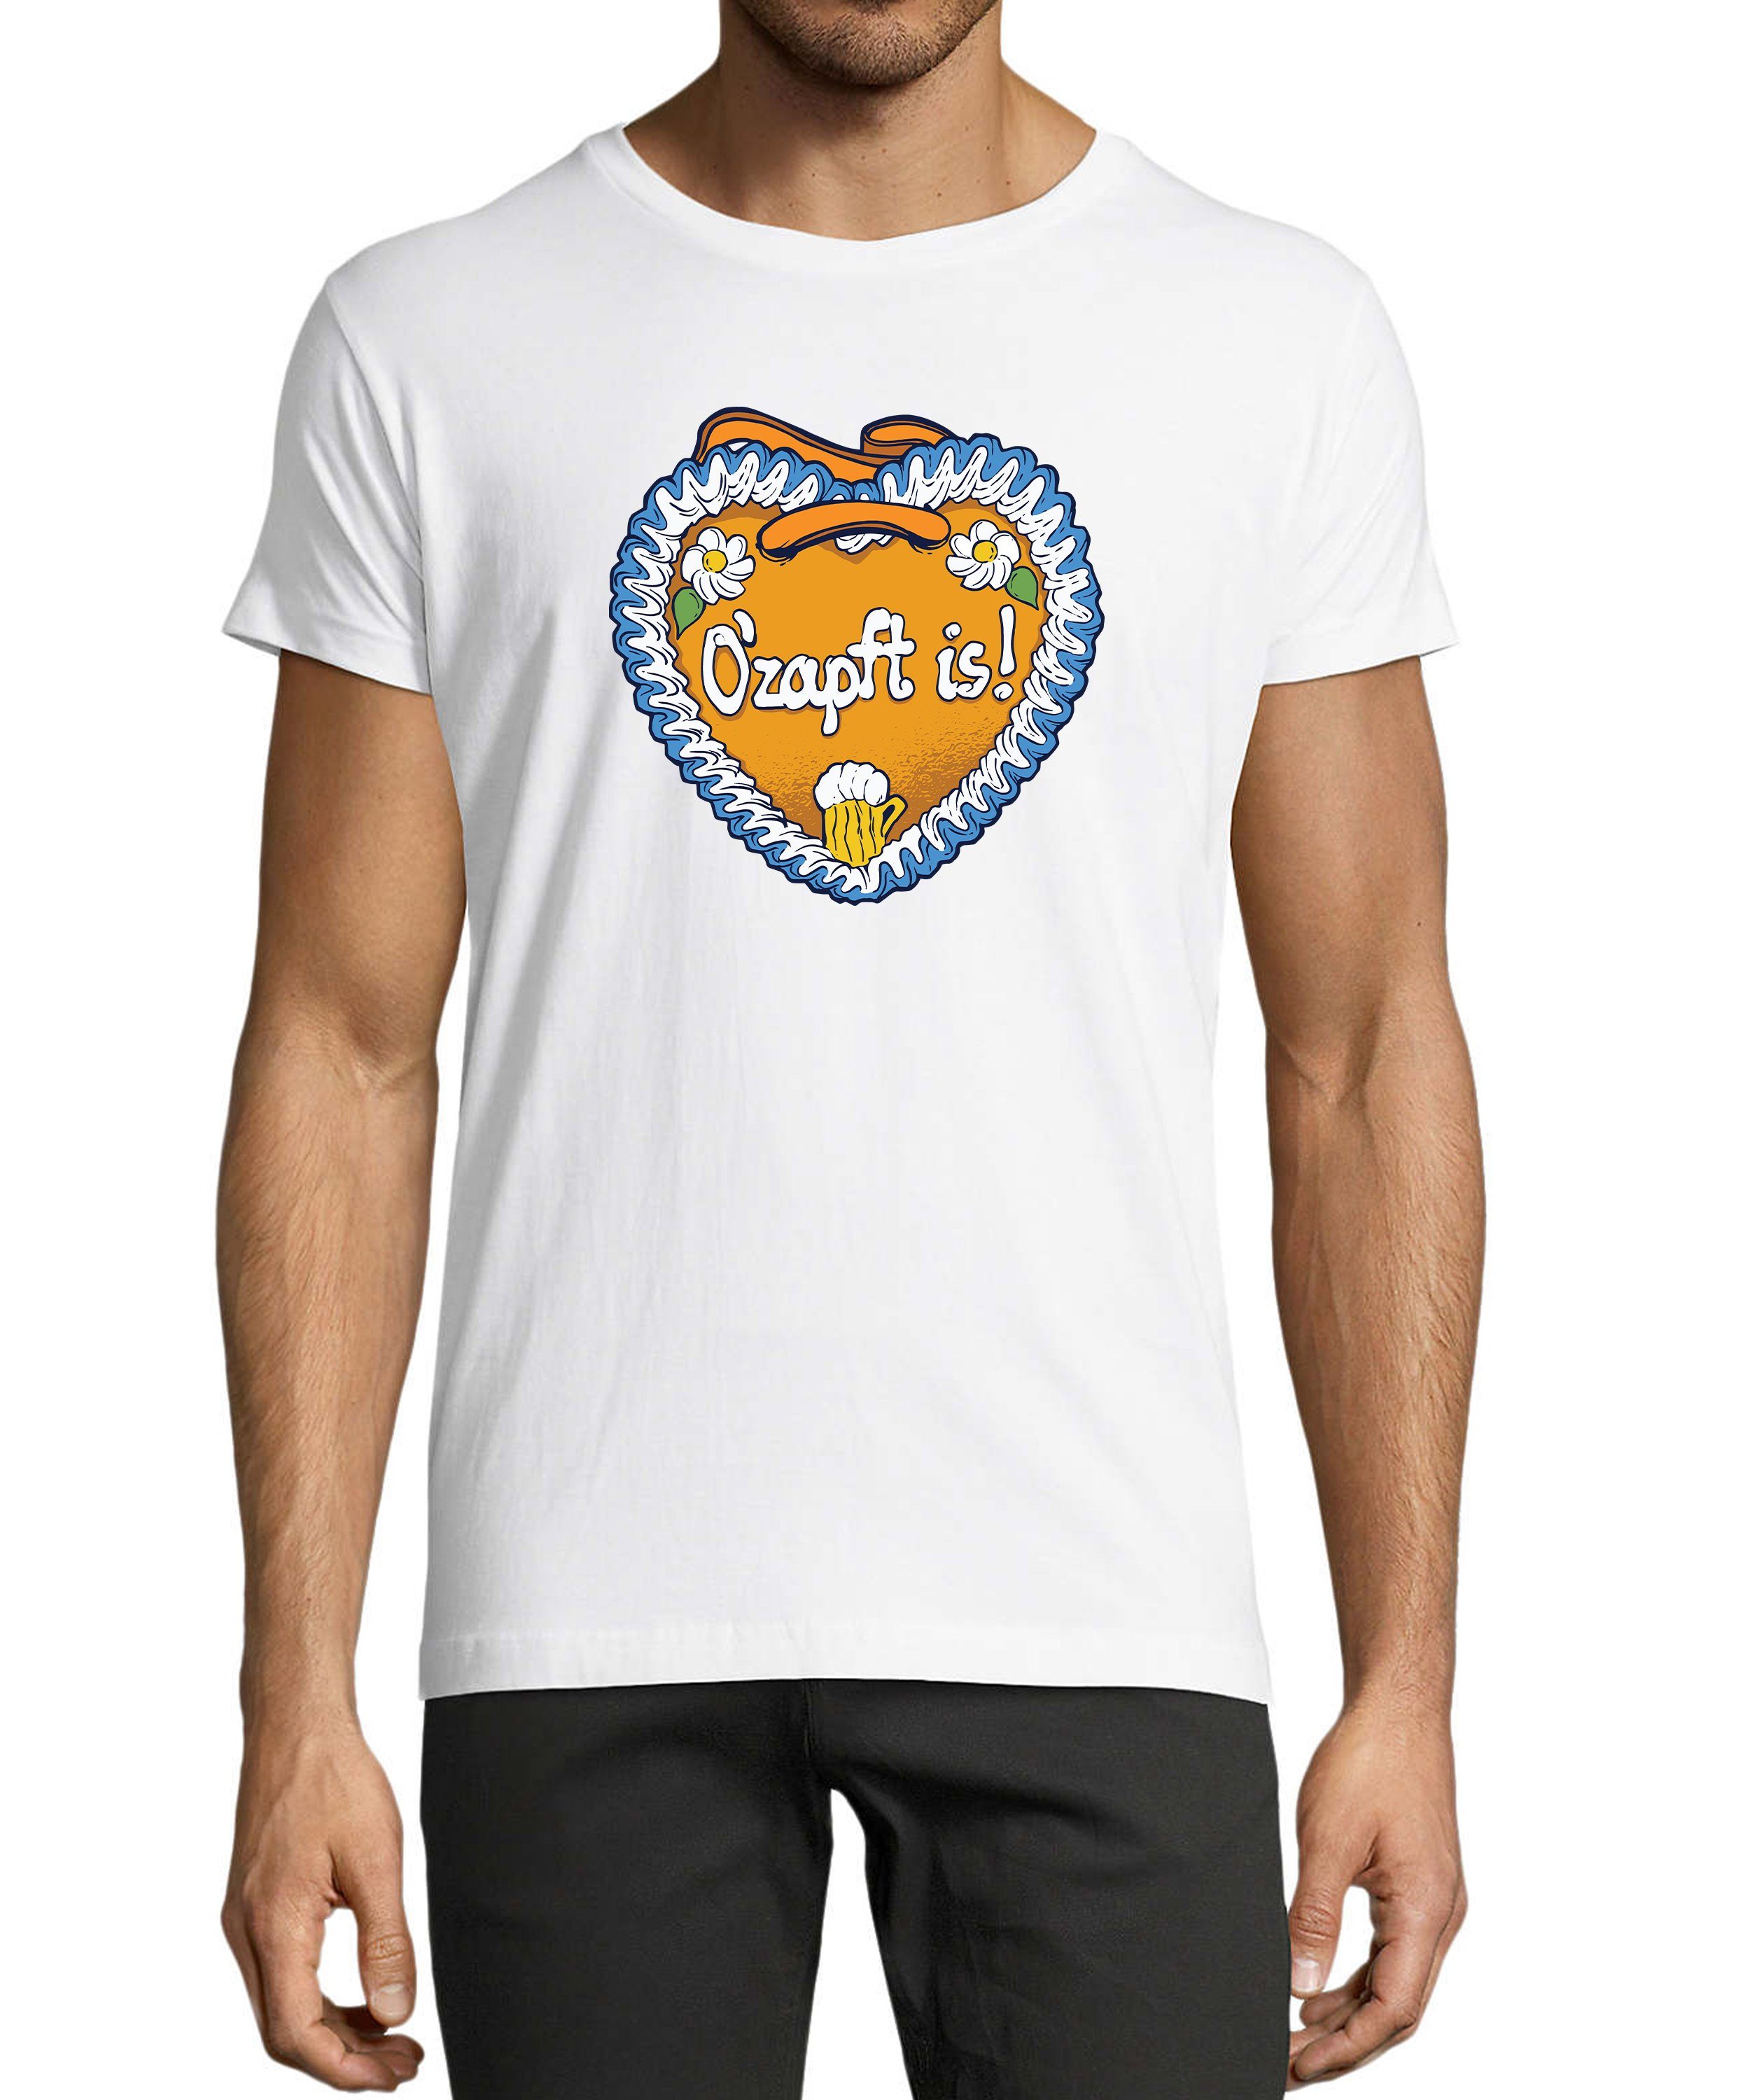 MyDesign24 T-Shirt Herren Fun Print Shirt - Trinkshirt O'Zapft is Baumwollshirt mit Aufdruck Regular Fit, i313 weiss